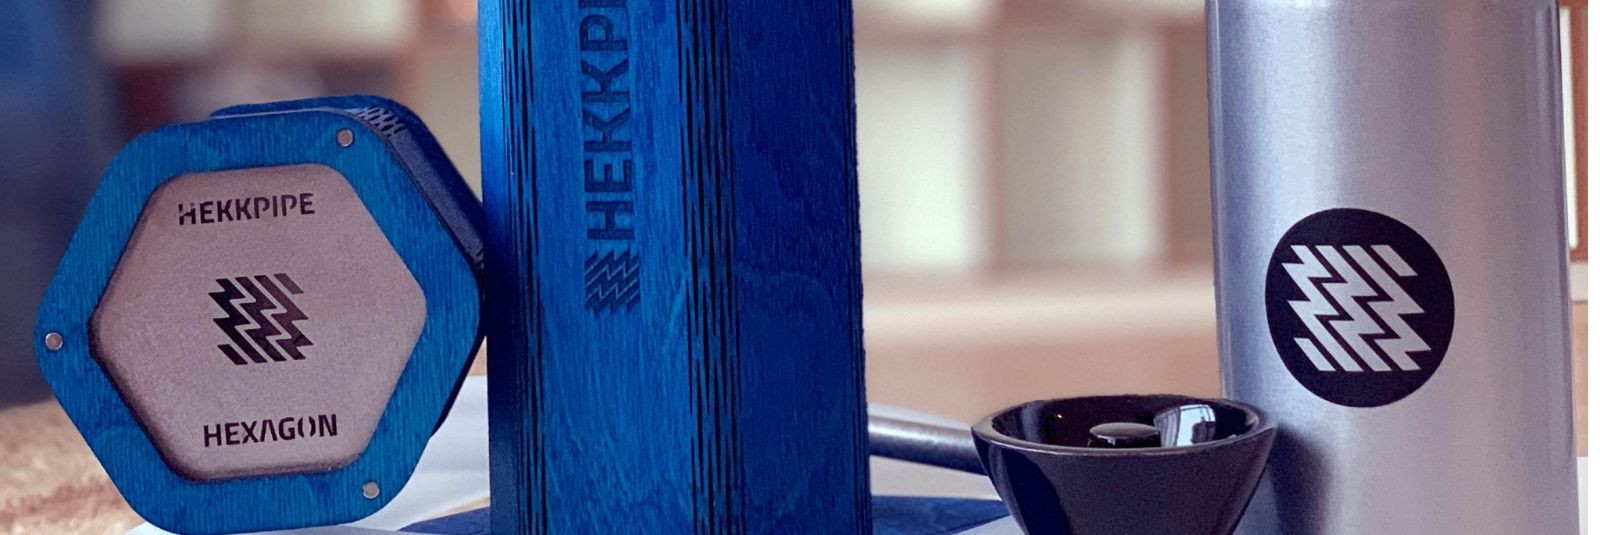 Hekkpipe on Eestis käsitööna valmistatud vesipiipude bränd, mis on tuntud oma unikaalse ja kaasaskantava disaini poolest. Pakkudes mitmeid erinevaid tooteid, on